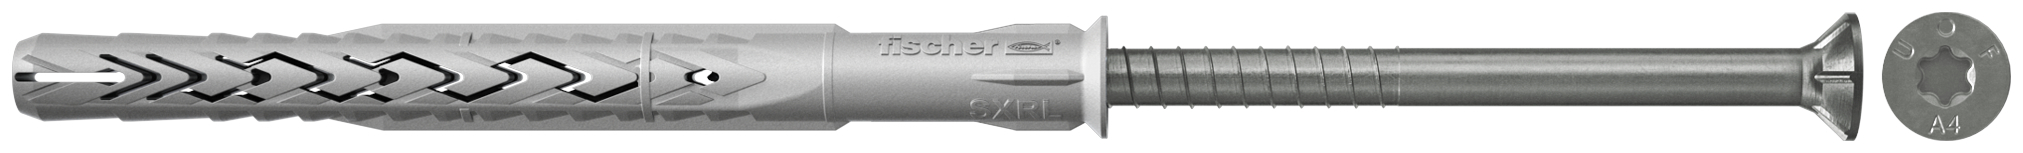 fischer Tasselli prolungati SXRL 10X200 T A4 (1 Pz.) Tassello prolungato in nylon con marcatura CE con vite premontata in acciaio inox A4, T.S.P. impronta torx fie2381